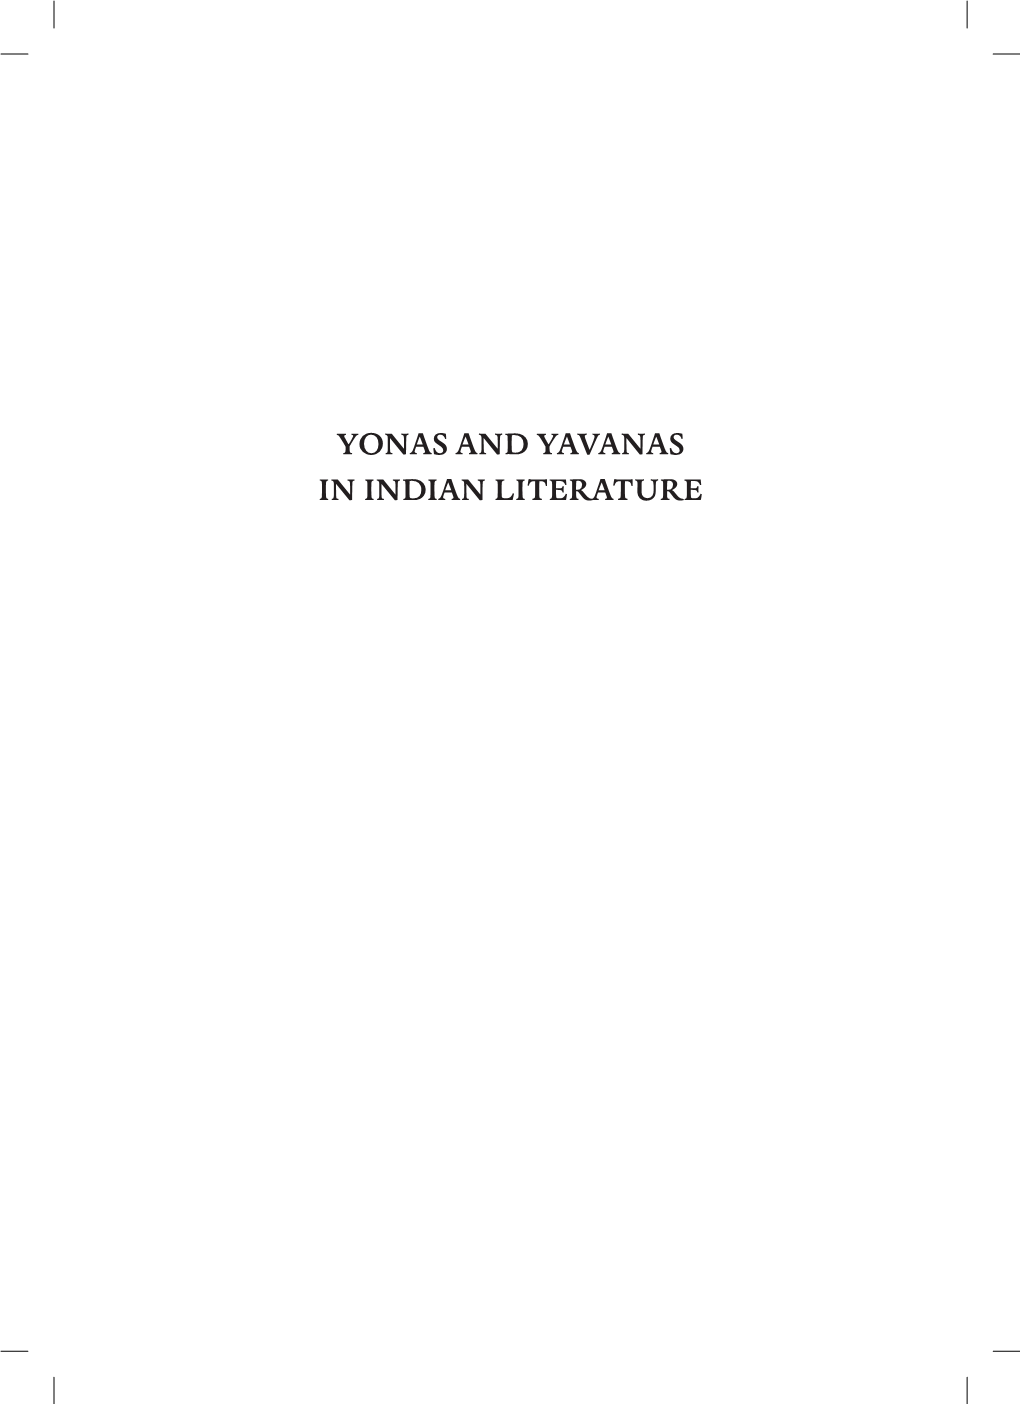 Yonas and Yavanas in Indian Literature Yonas and Yavanas in Indian Literature